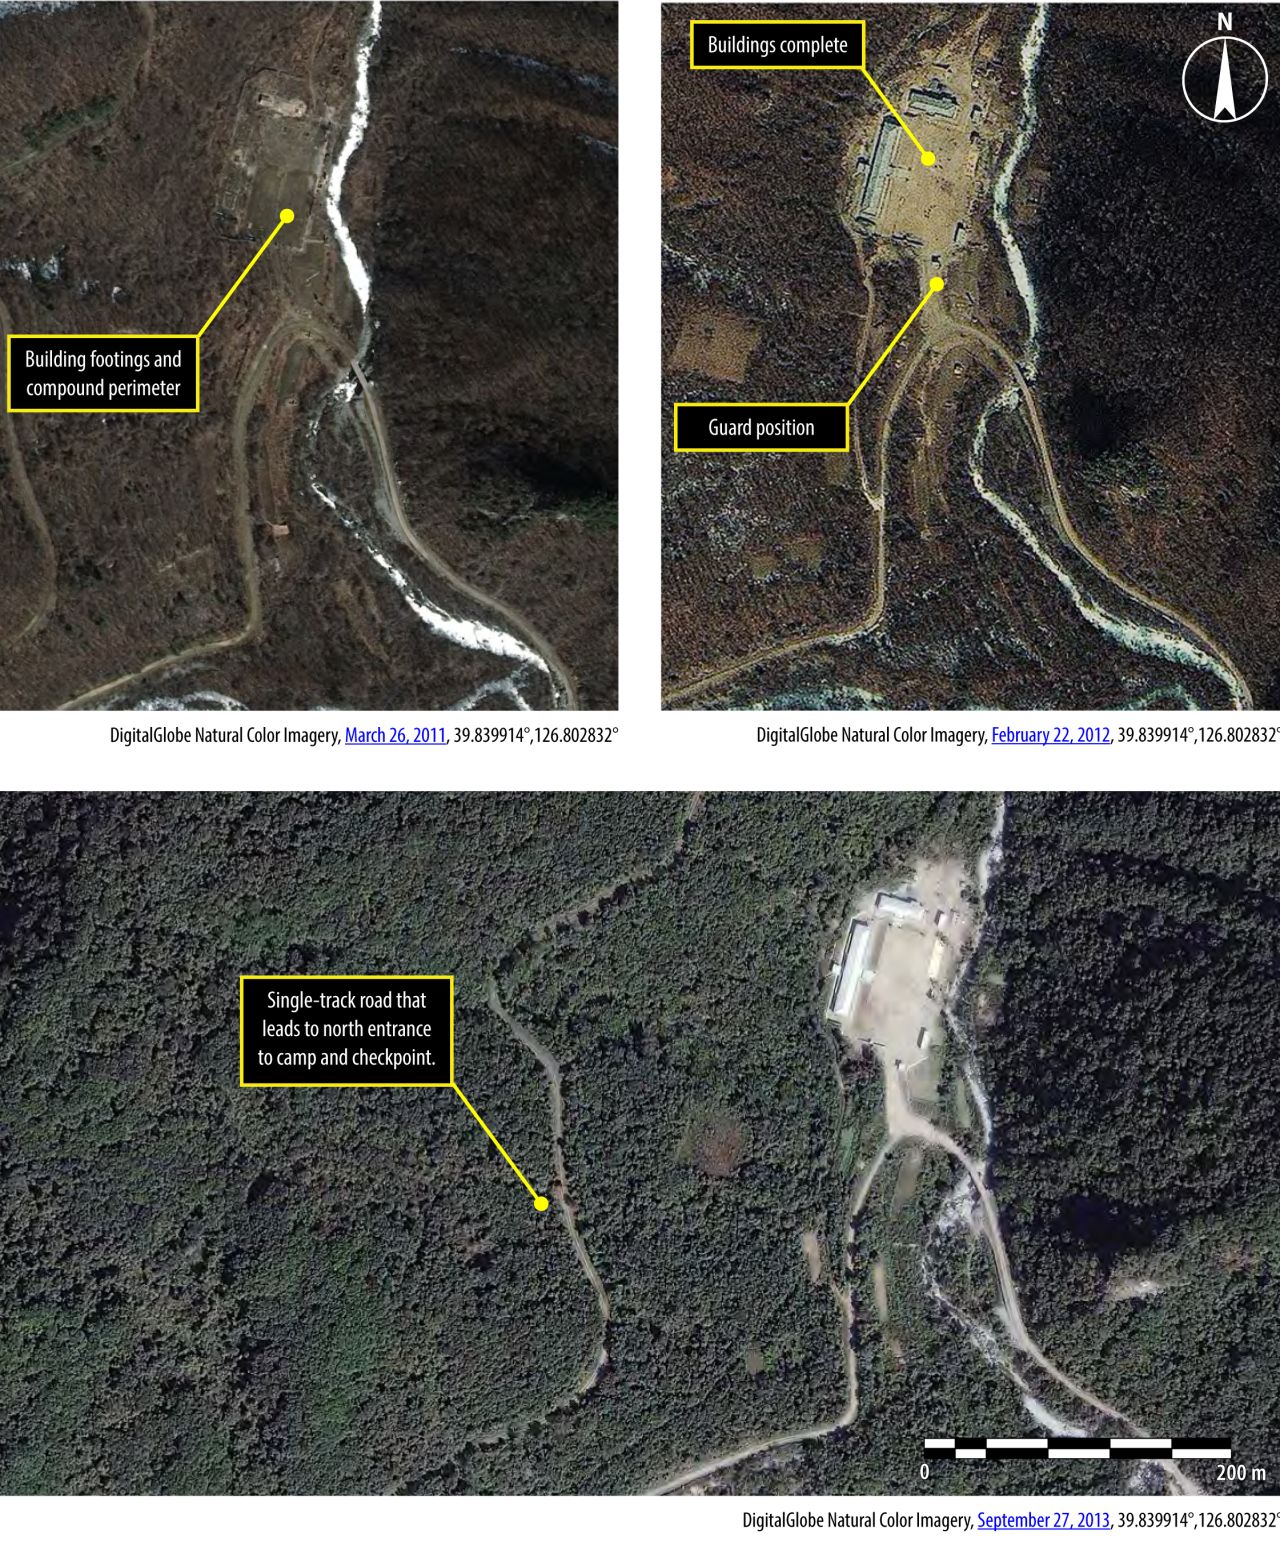 Las imágenes de satélite de Kwanliso 15 (Yodok Kwanliso), tomadas el 26 de marzo de 2011 y el 22 de febrero de 2012, muestran un complejo administrativo construido durante ese período. El complejo probablemente es una estación de guardia o un área administrativa para dar apoyo a las actividades de tala.